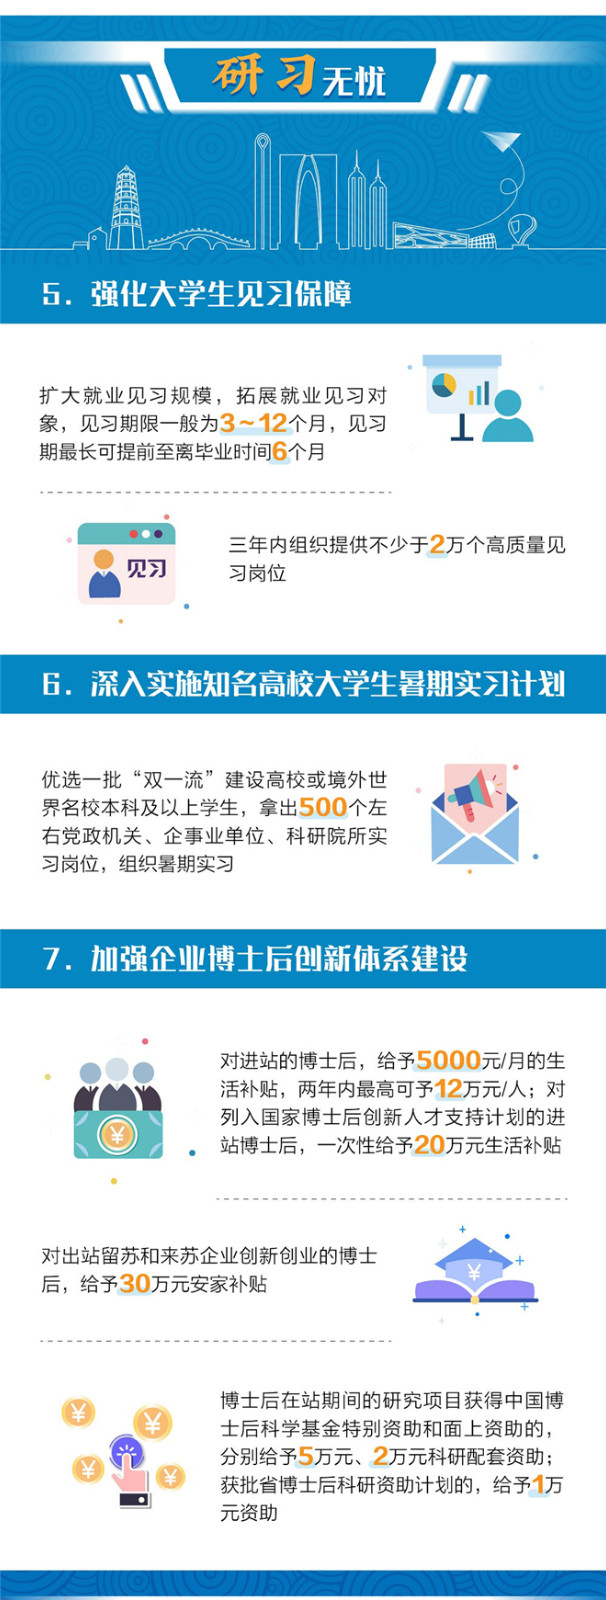 苏州姑苏放宽落户限制 20%商品房人才优先购买-中国网地产